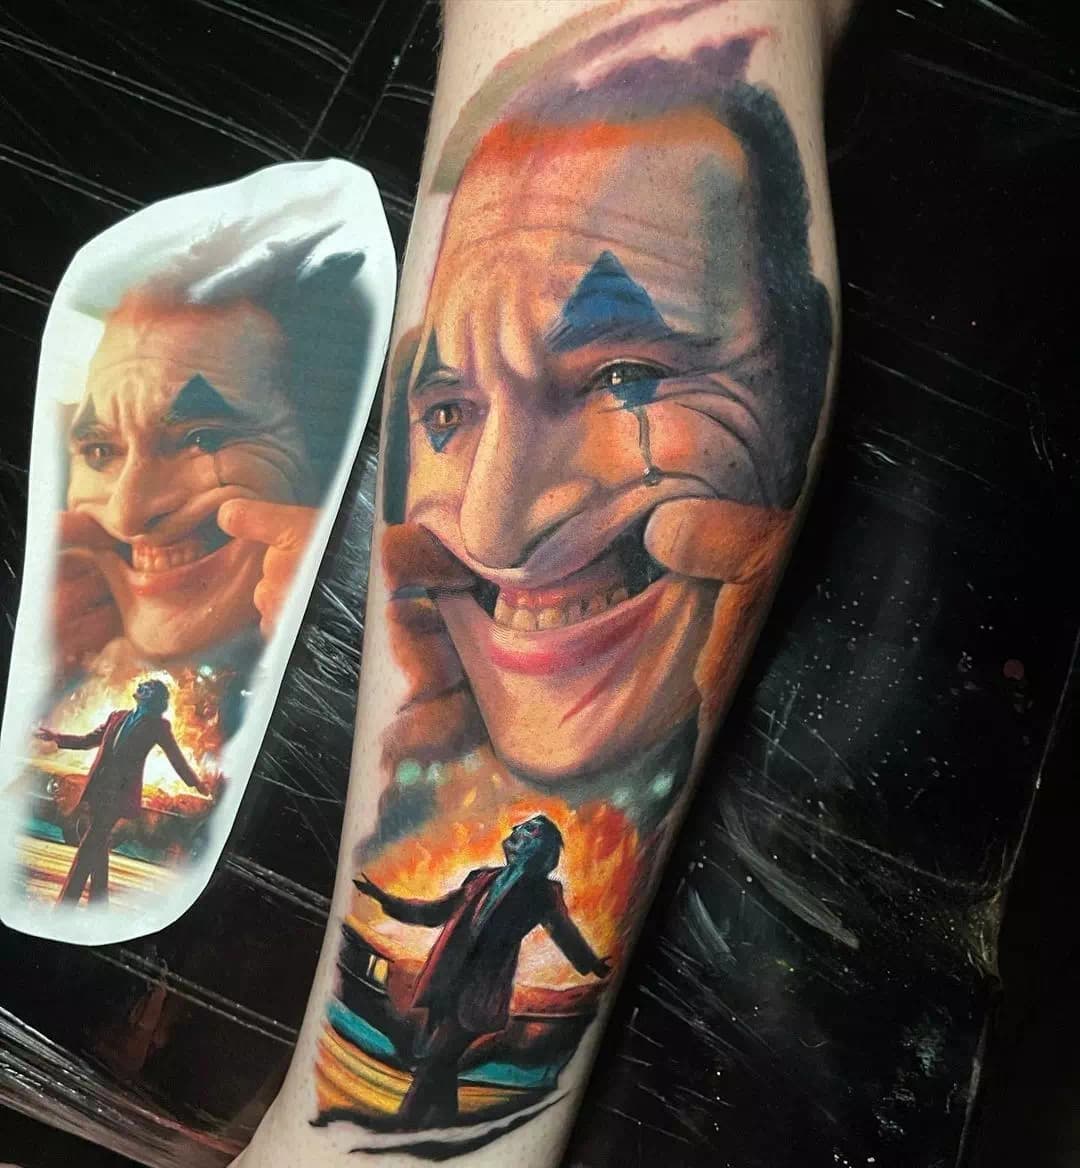 Tatuaje del Joker inspirado en los dibujos animados del Pop Art